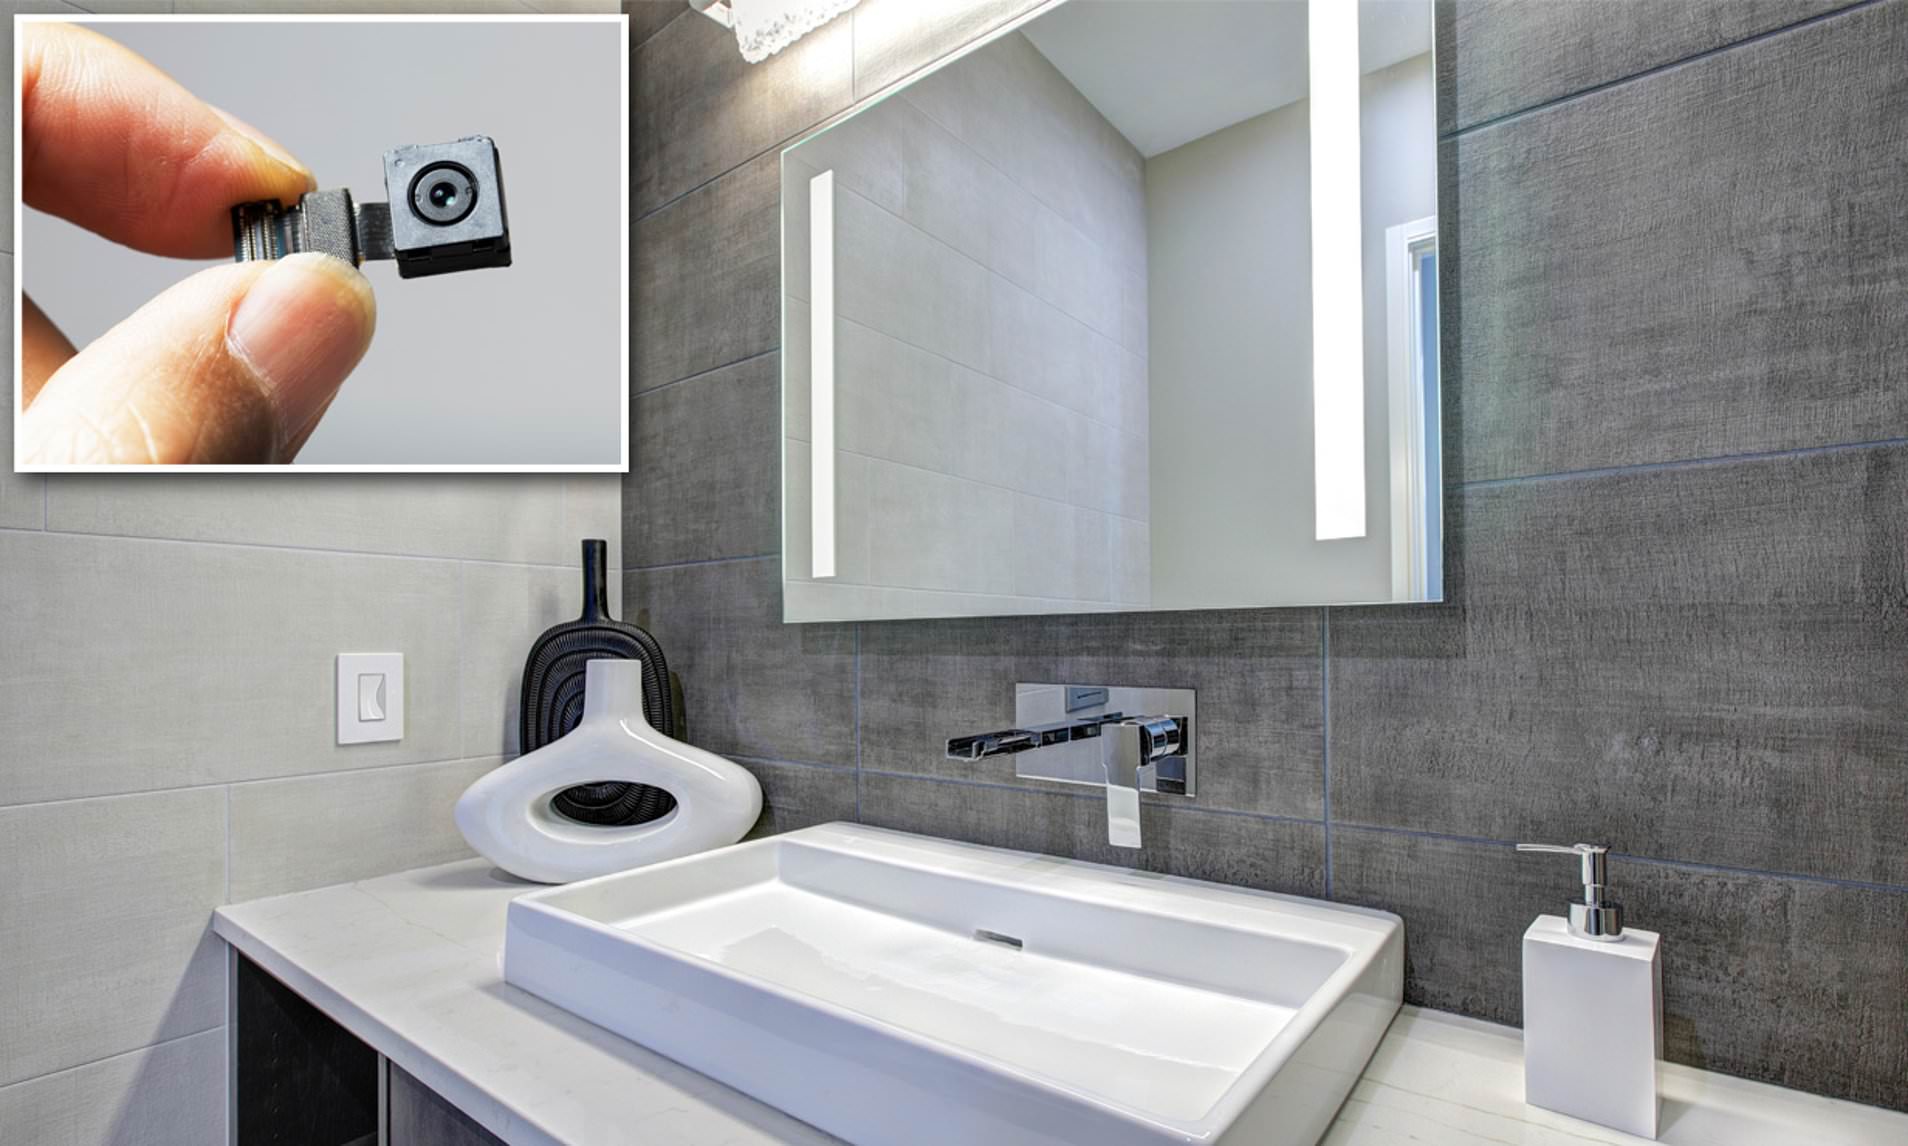 alyssa rutledge share hidden camera in restroom photos